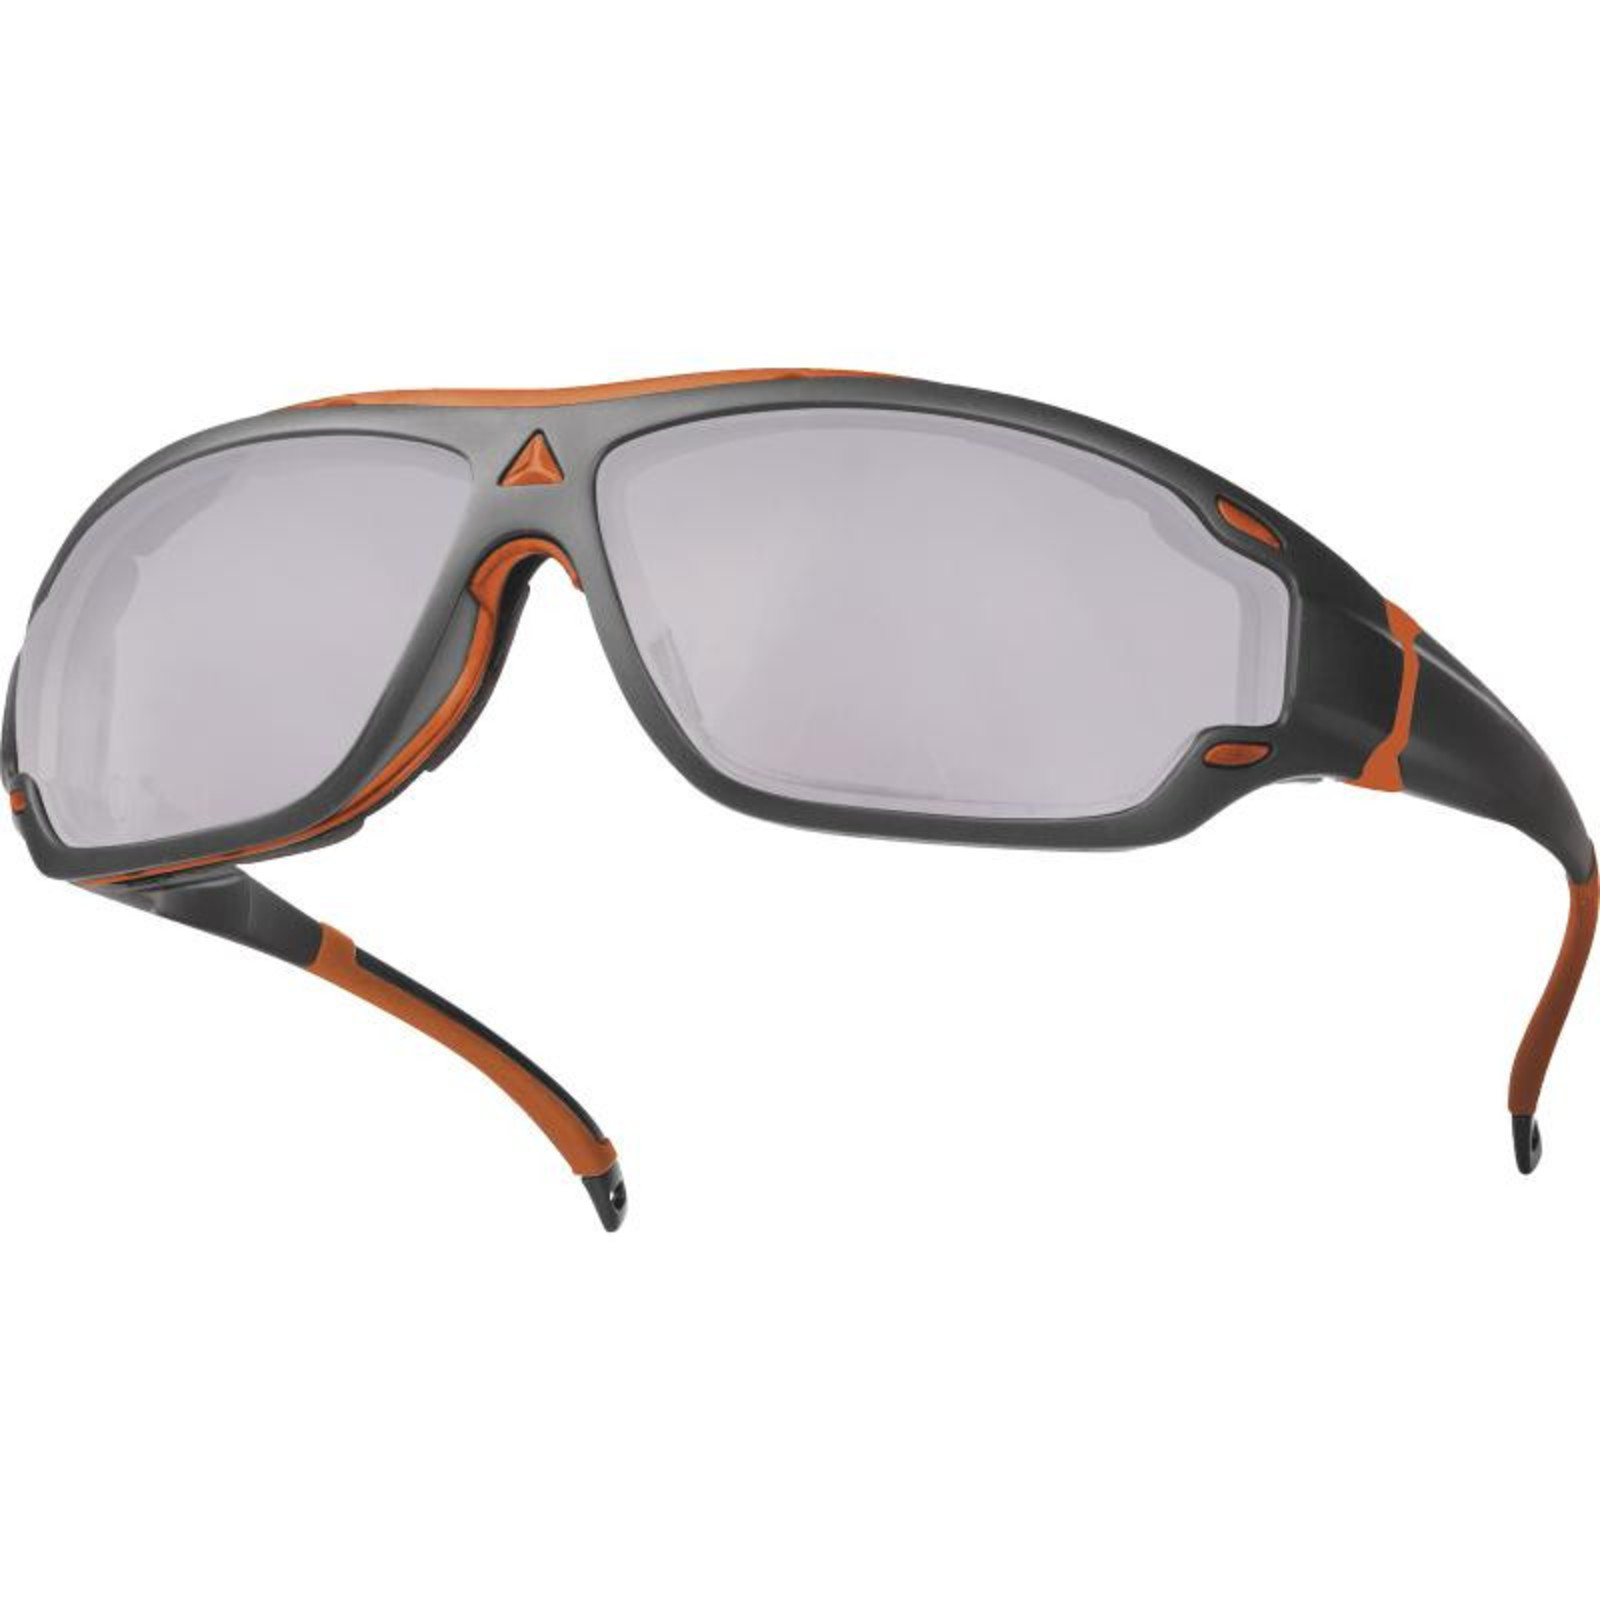 Ochranné okuliare Delta Plus Blow2 - veľkosť: UNI, farba: zrkadlová